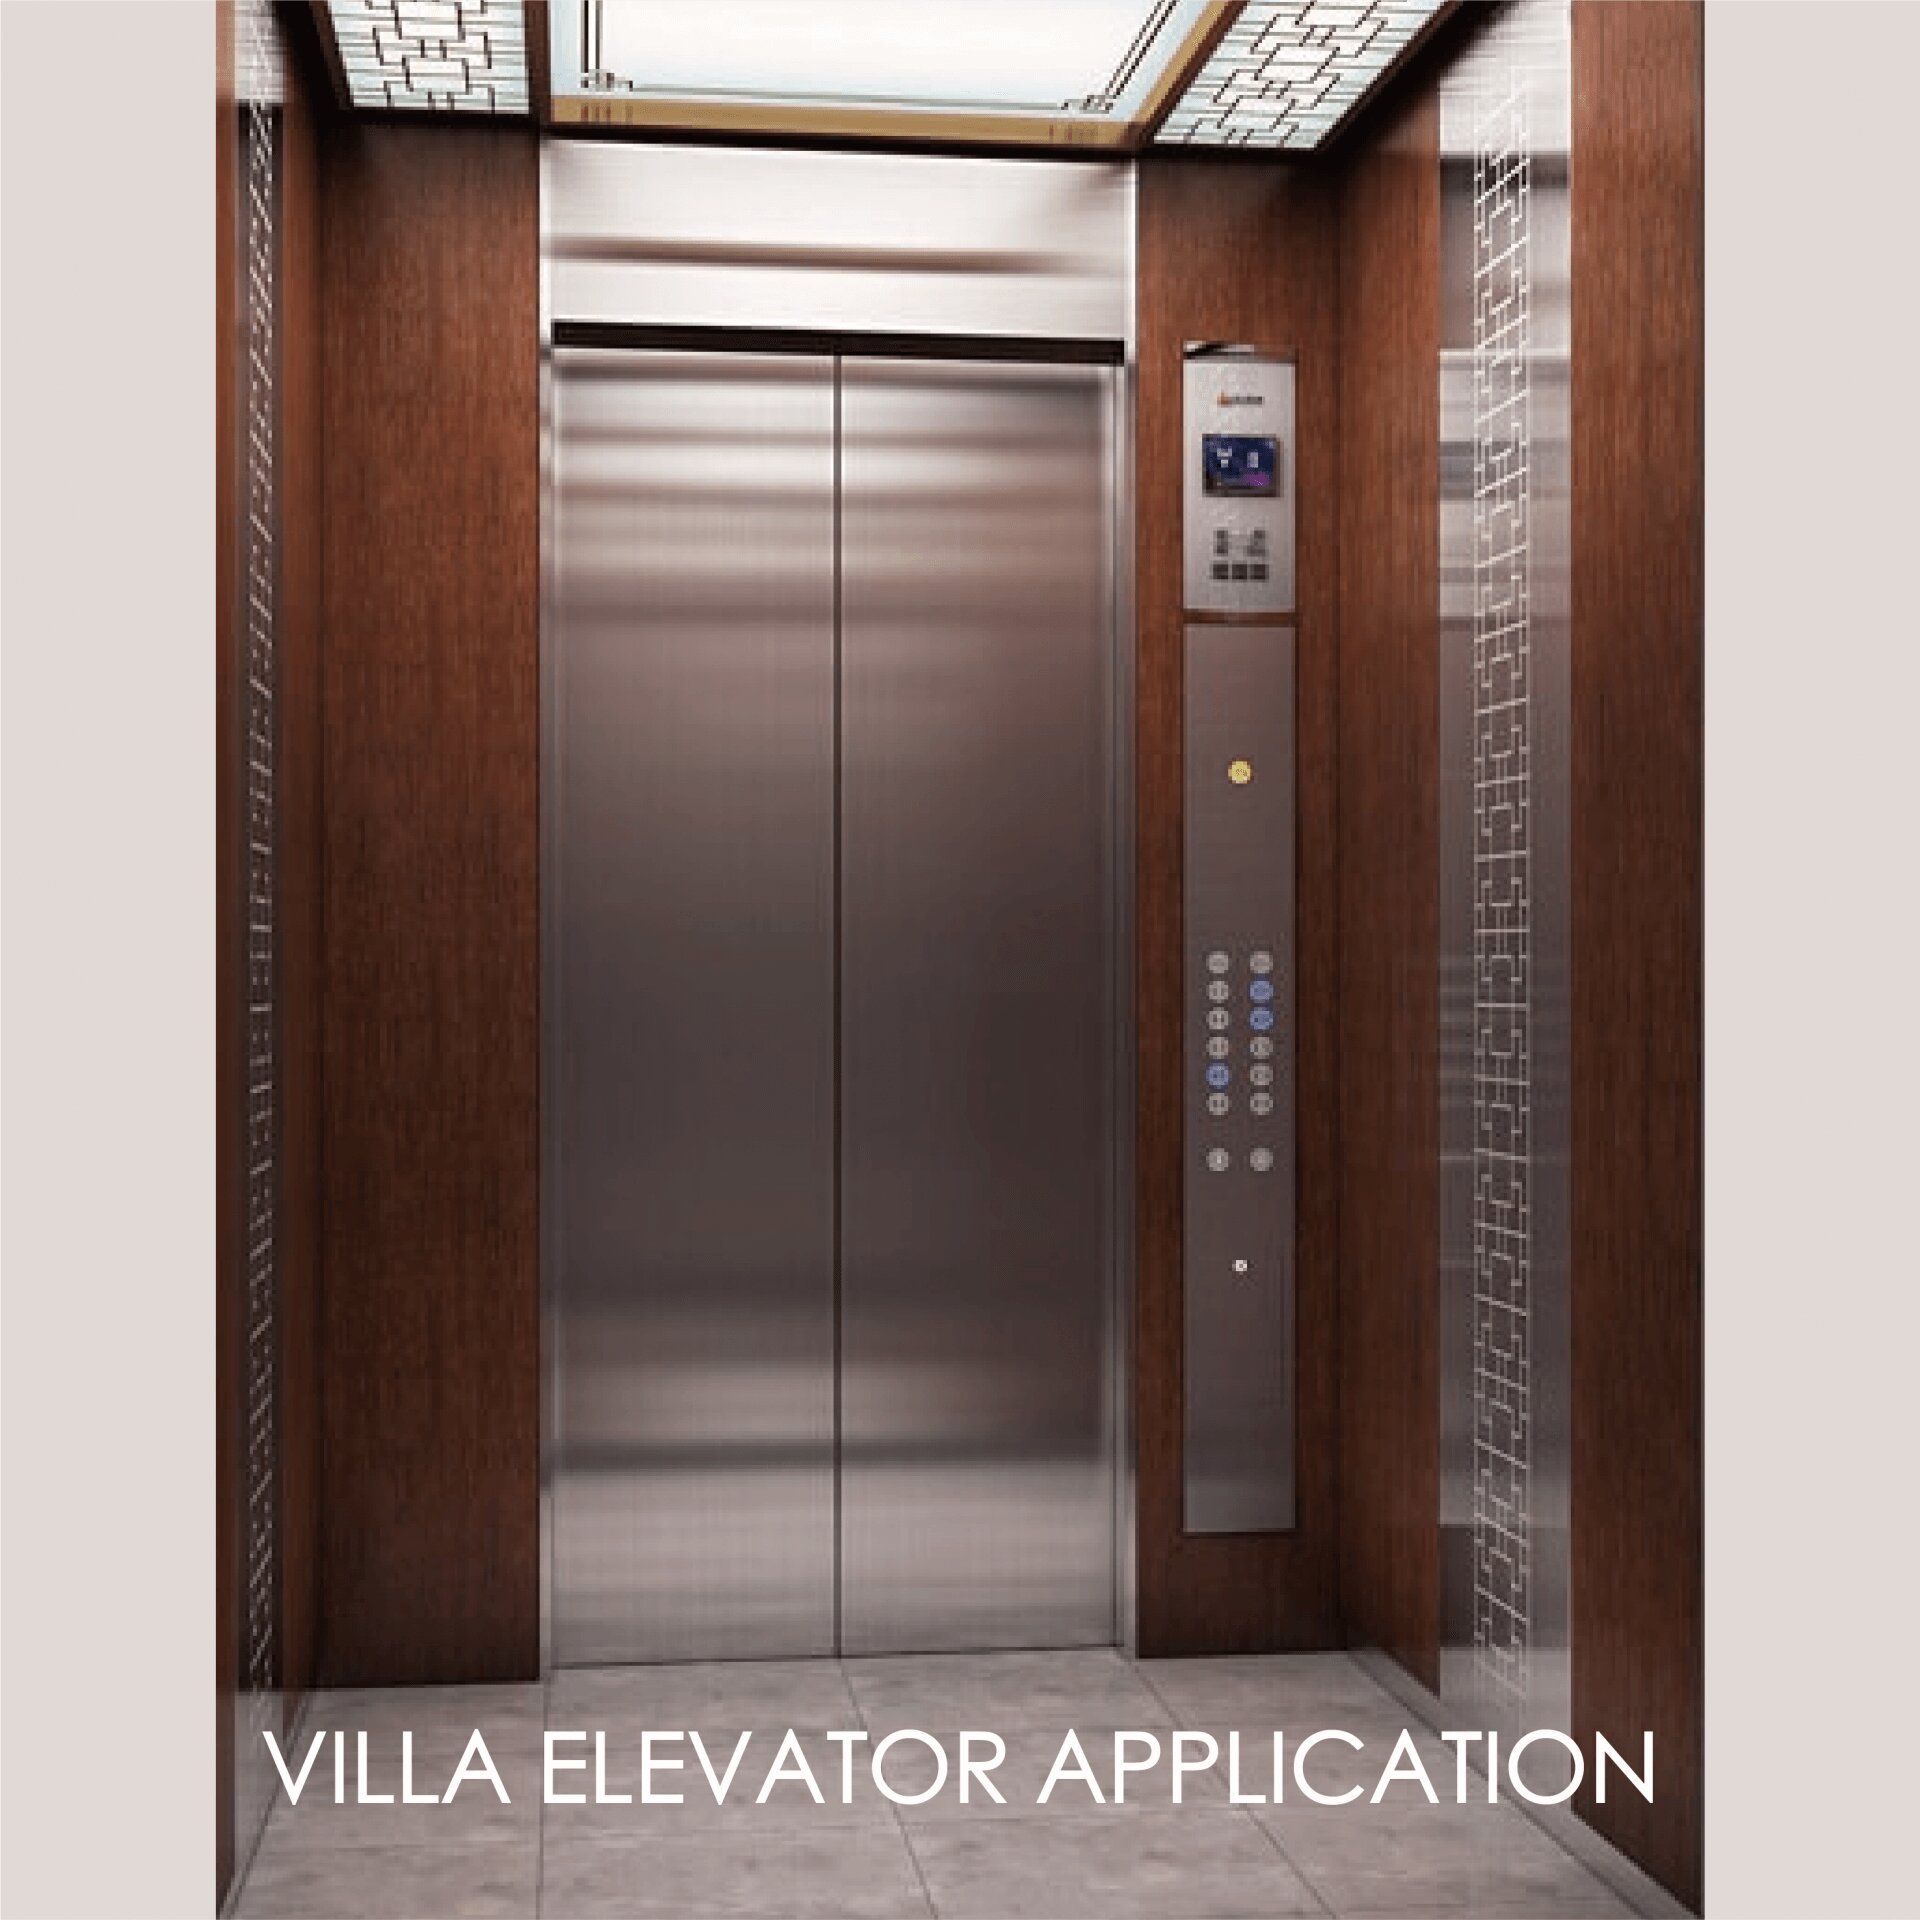 שימוש במתכת למינציה כדי לעצב את פאנלי דלת המעלית והמרחב הפנימי יכול ליצור אסתטיקה ועמידות.